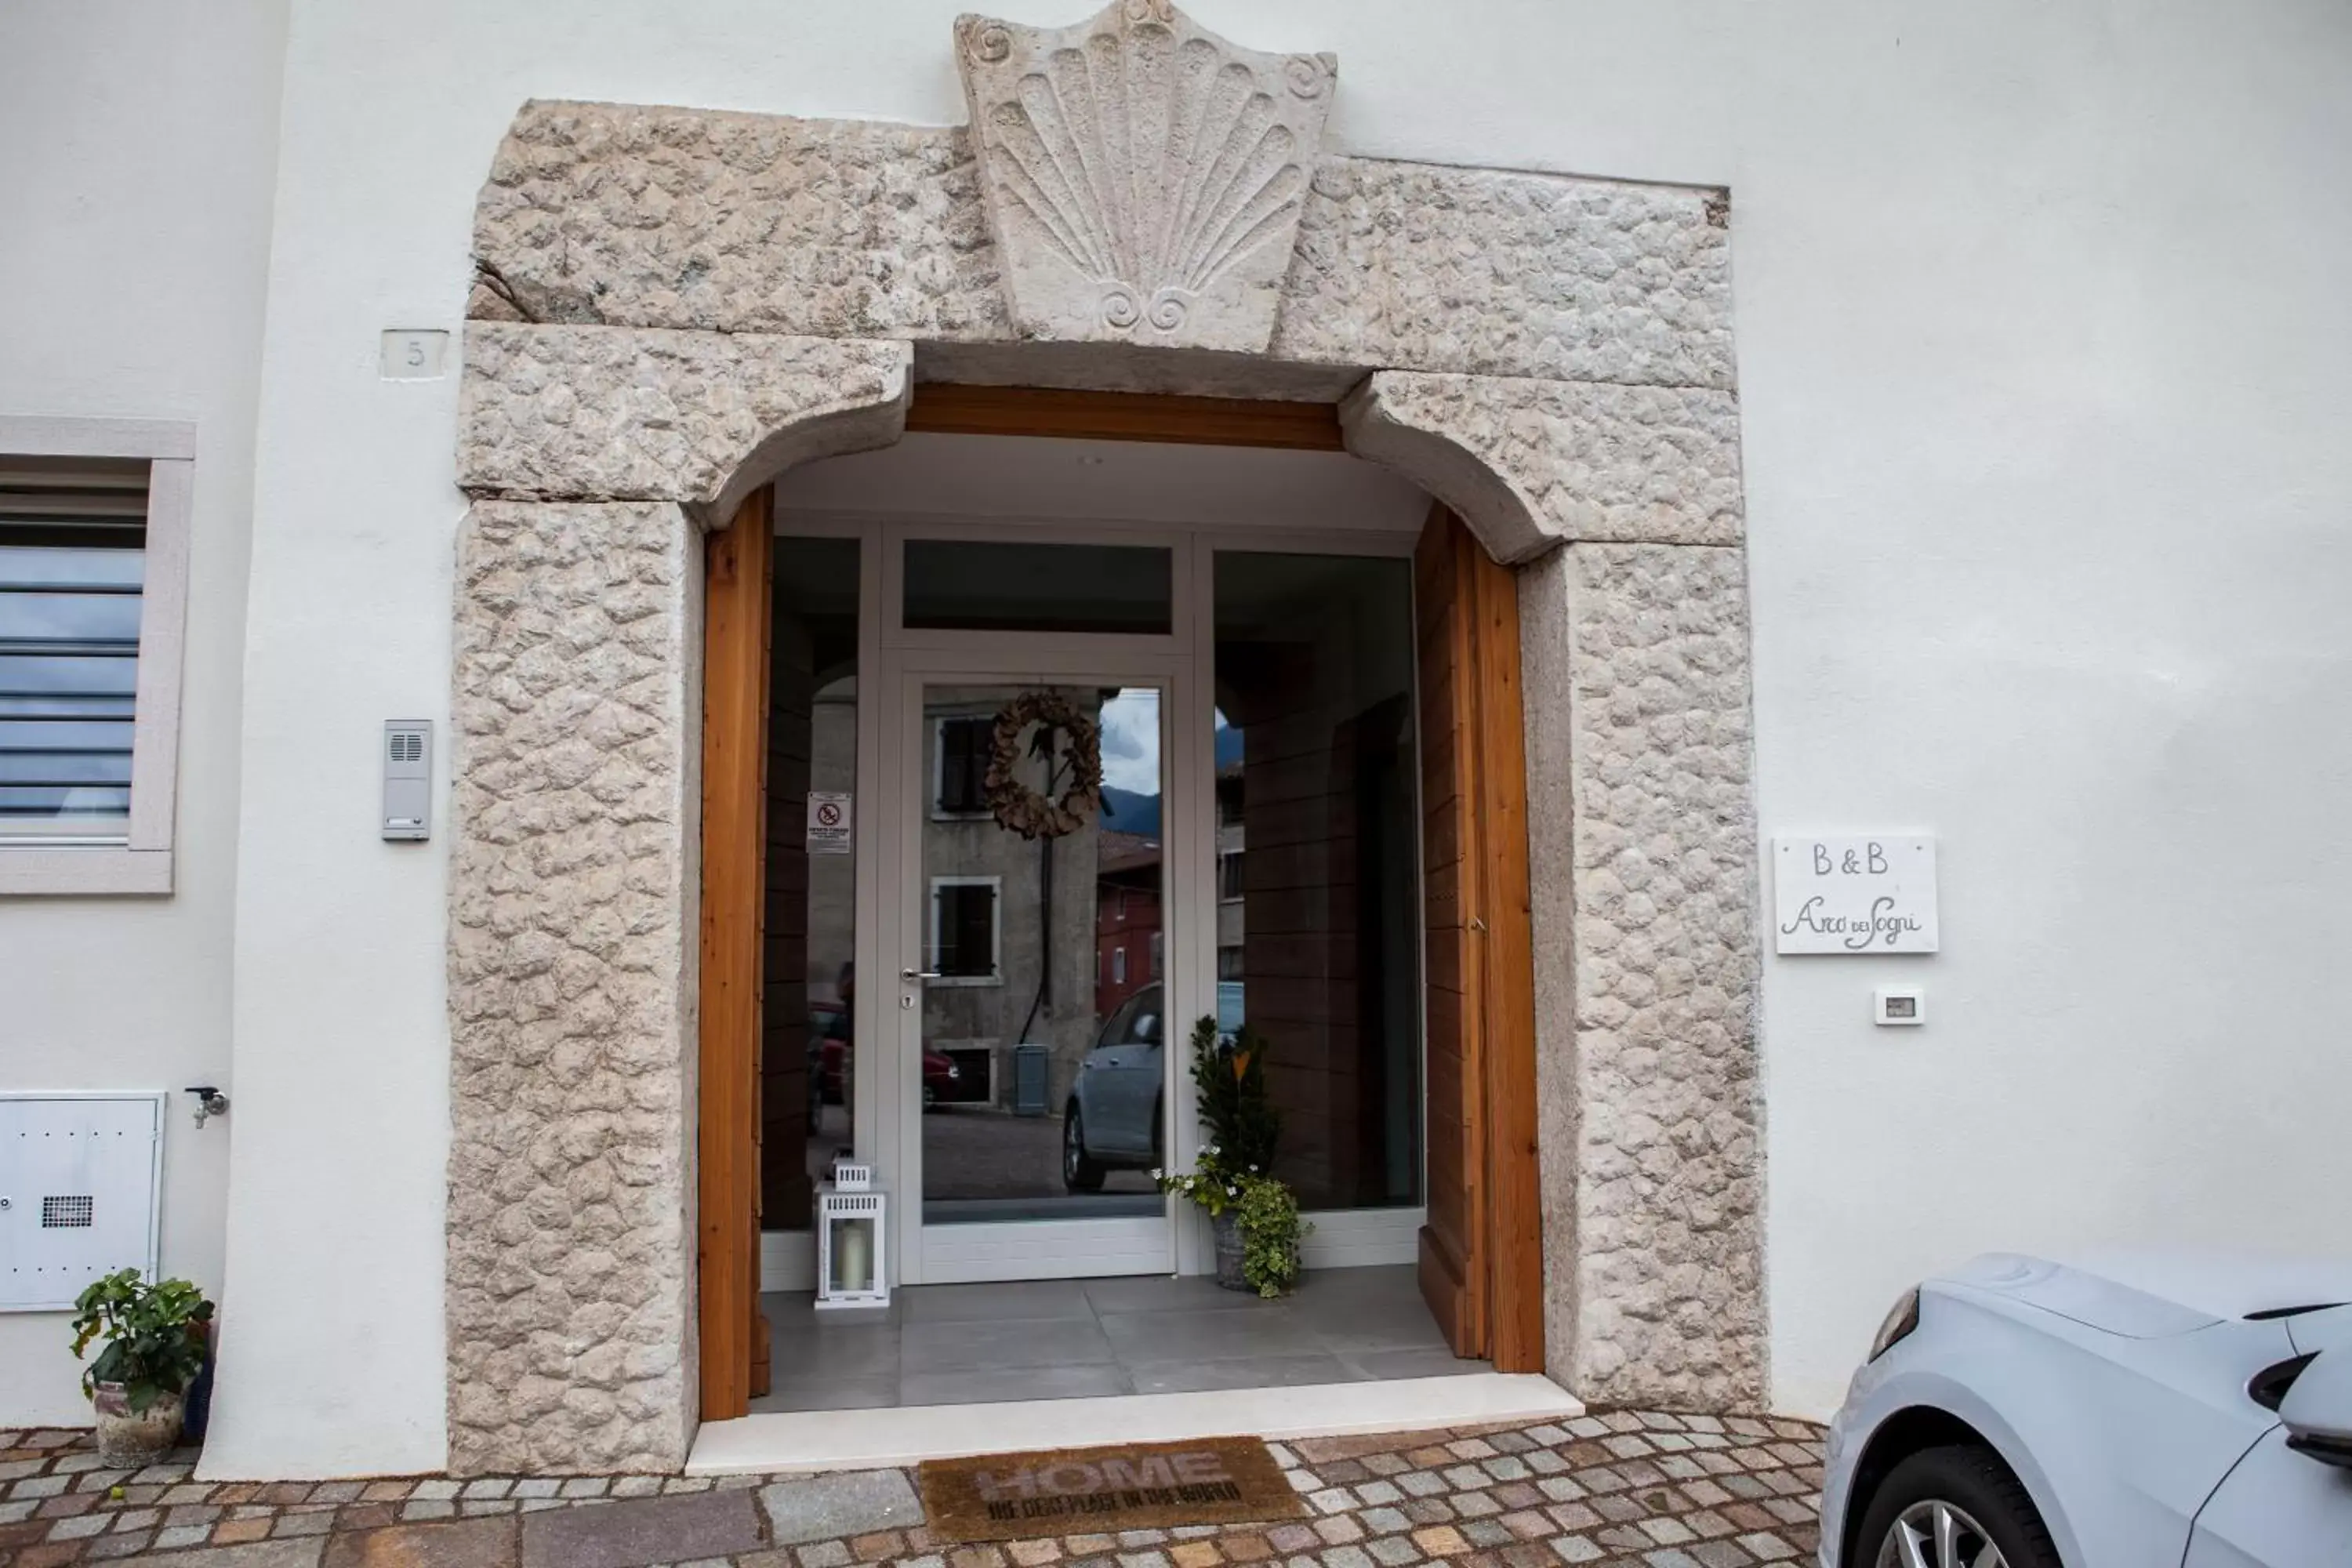 Property building in Arco Dei Sogni